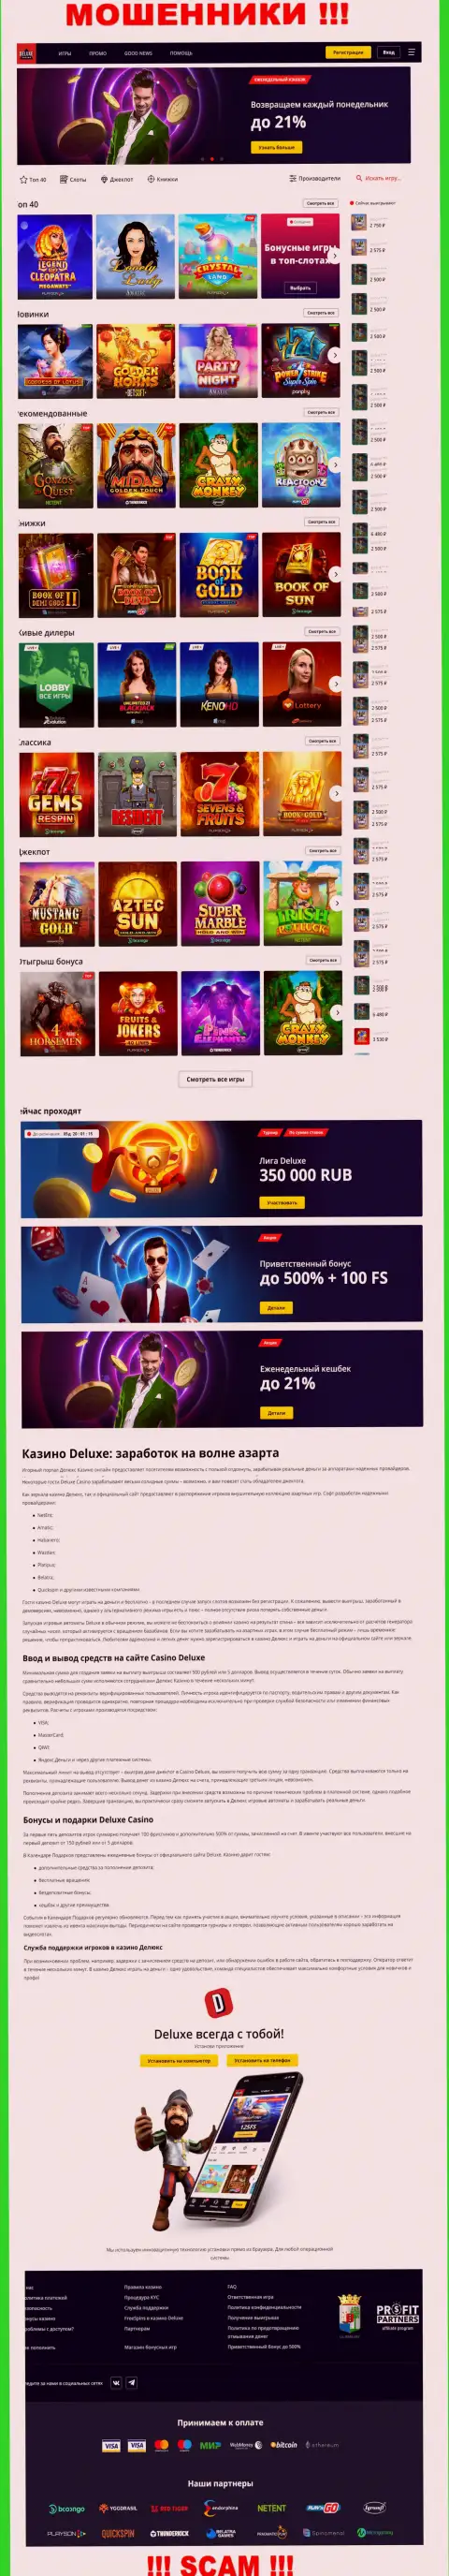 Официальная страница компании Deluxe-Casino Com